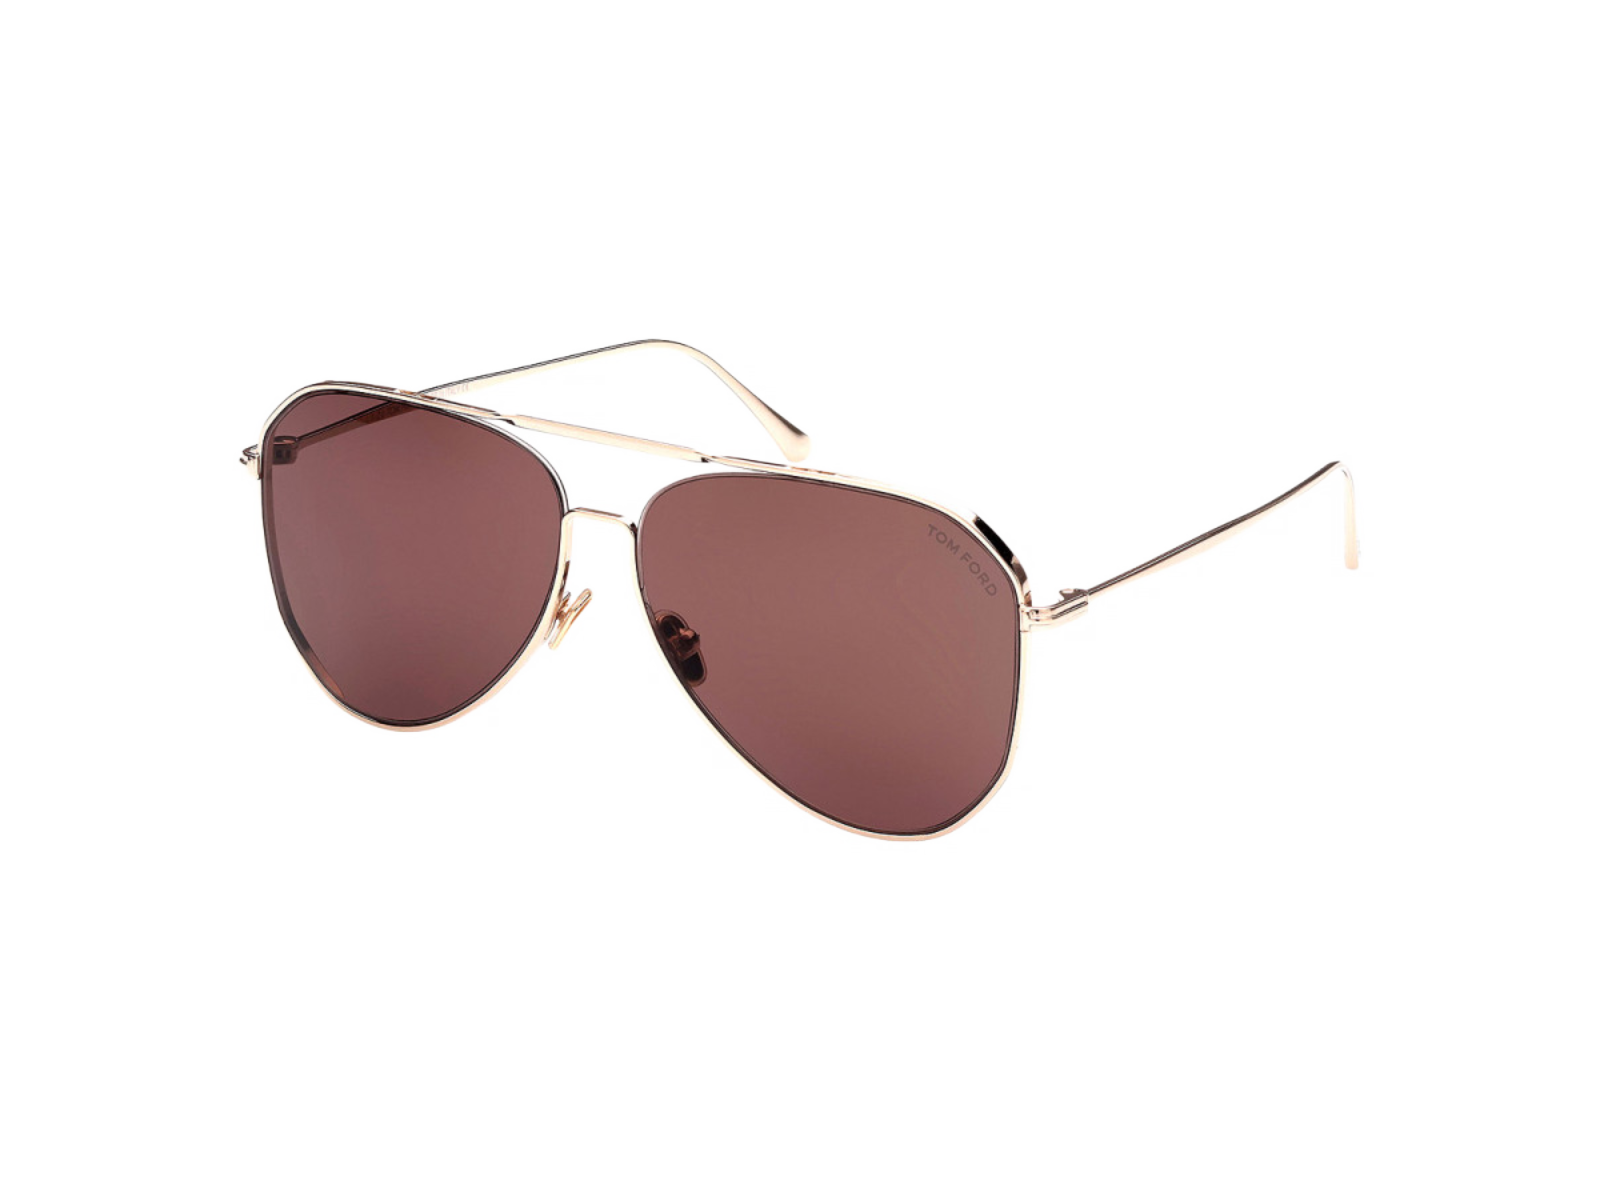 Tom Ford Sunglasses Tom Ford Sunglasses FT0853 28E 60mm Charles-02 Eyeglasses Eyewear UK USA Australia 